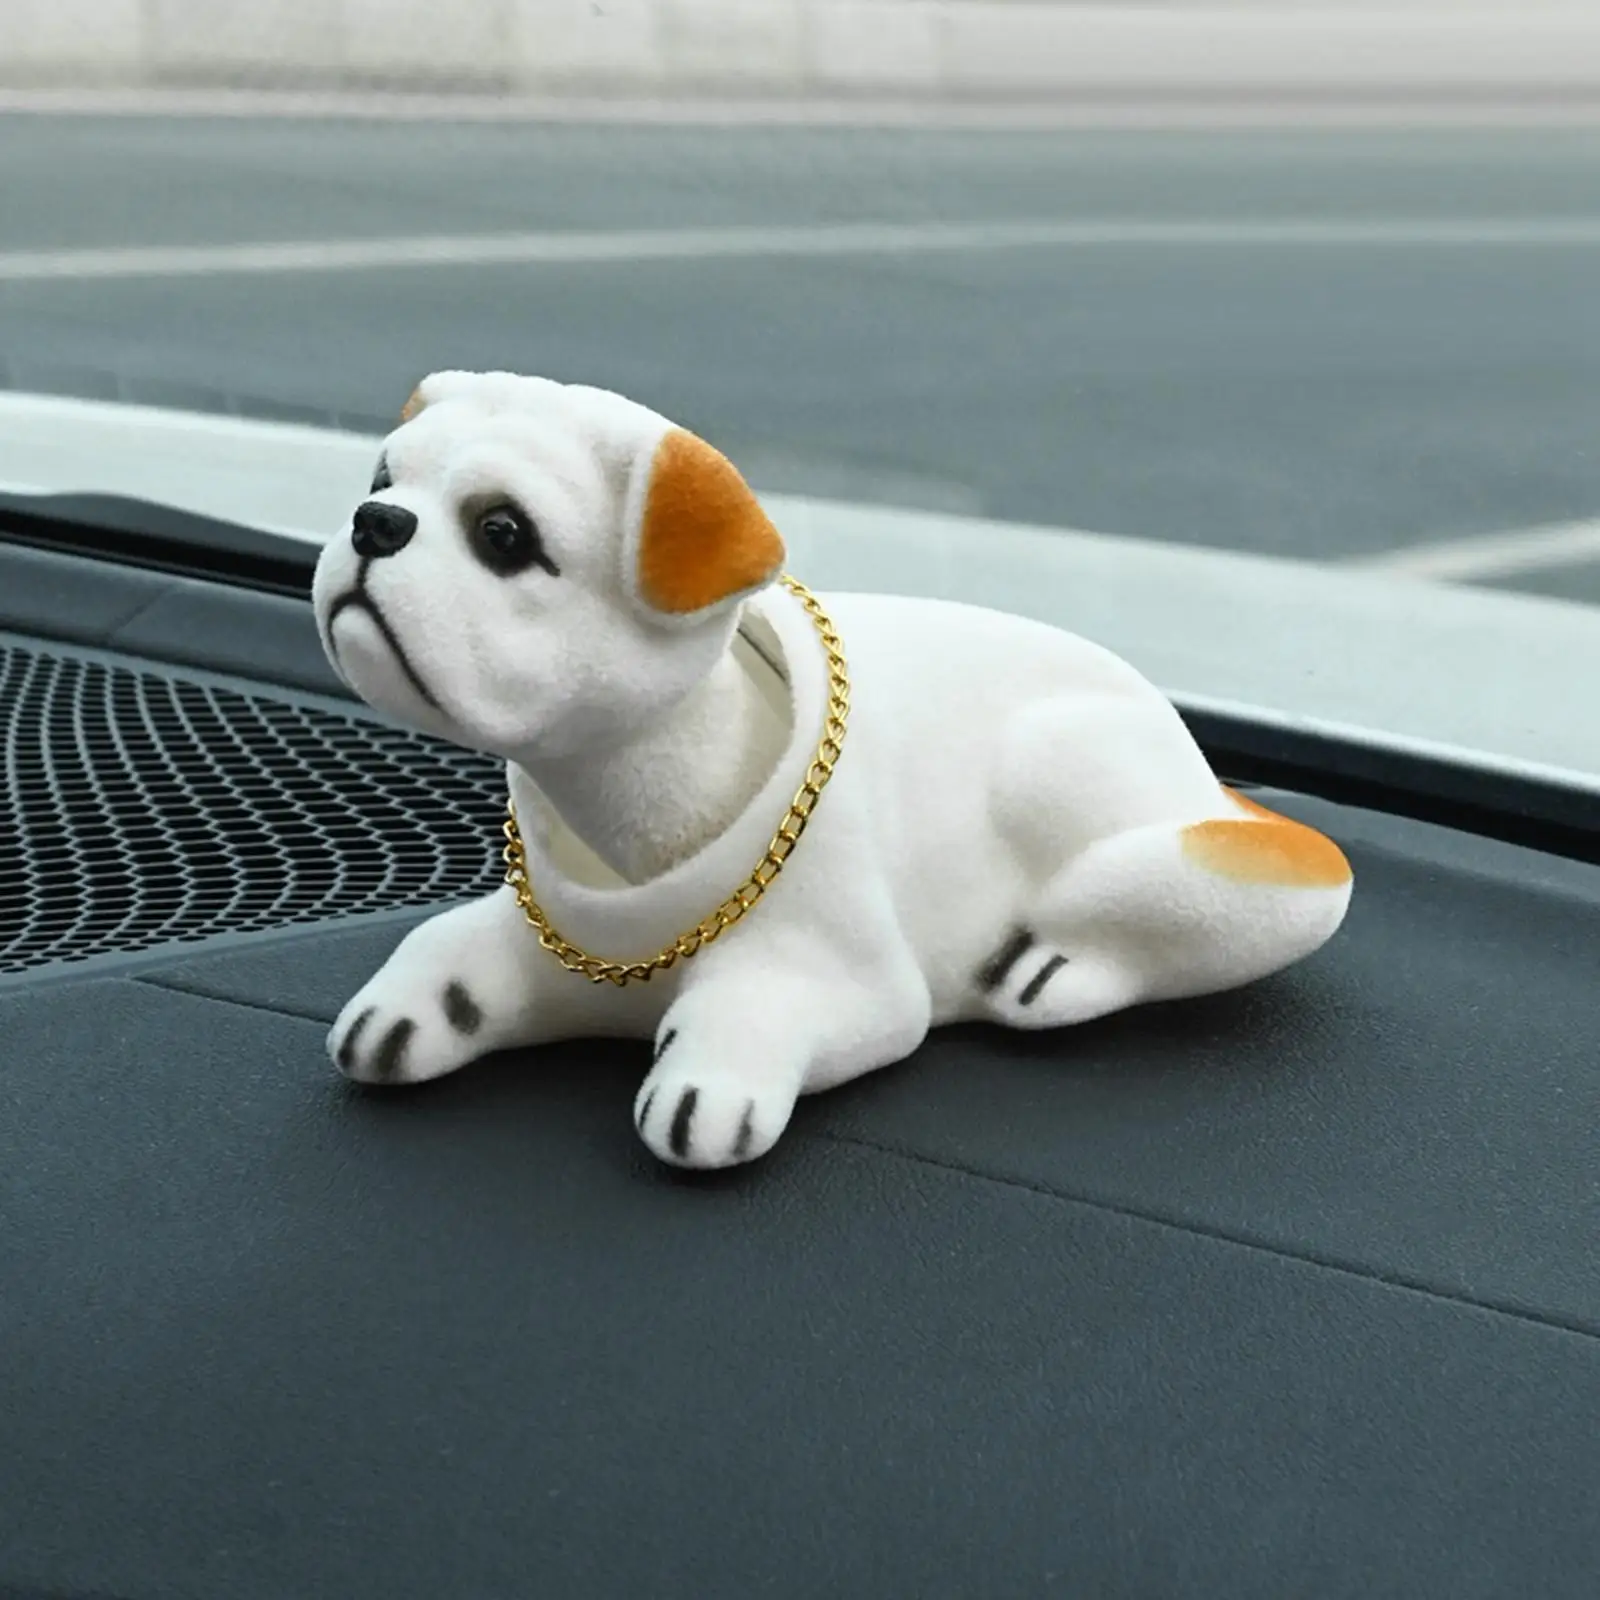 Cute Bobble Head Dog Nodding Dog Puppy for Car Dashboard Ornament Decoration